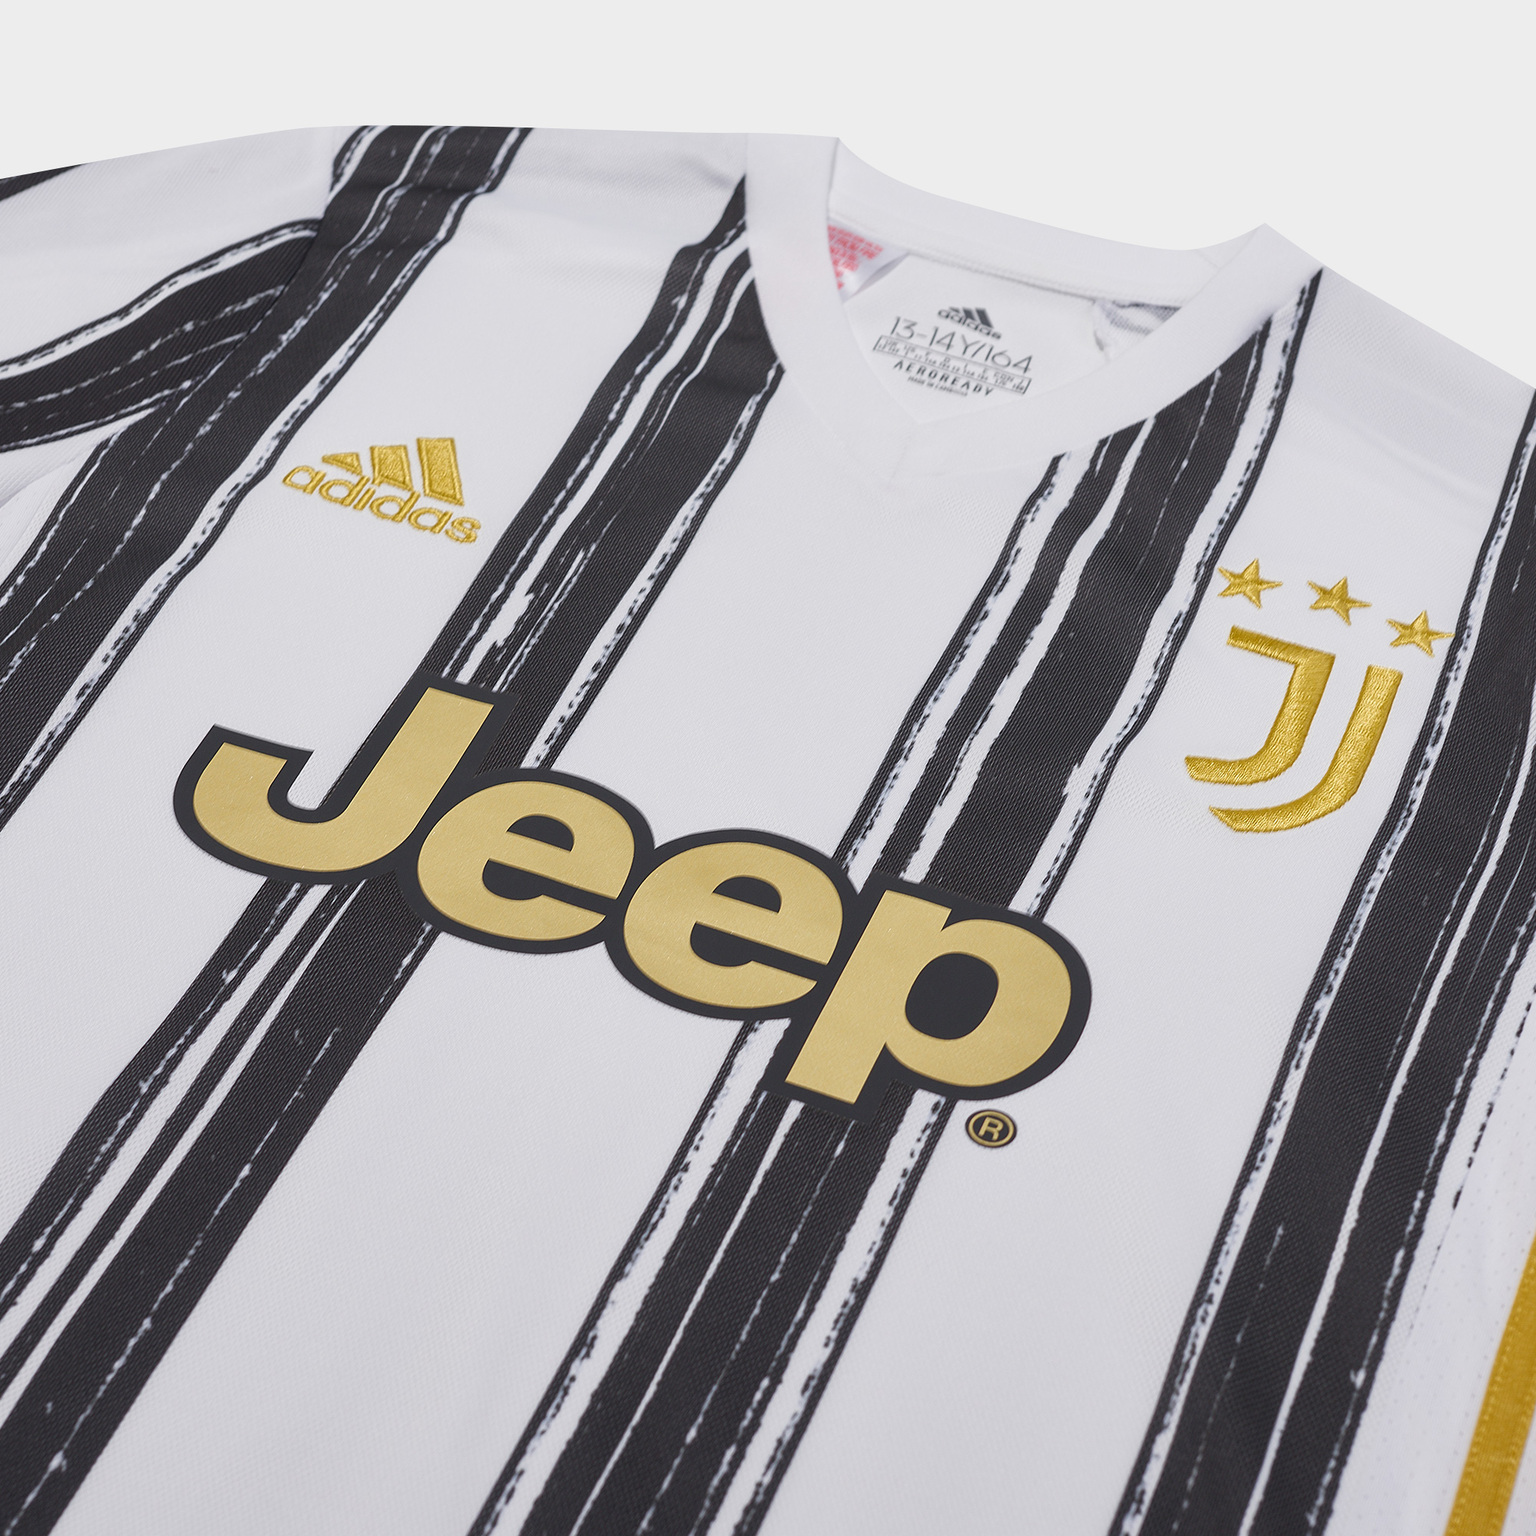 Футболка домашняя подростковая Adidas Juventus сезон 2020/21